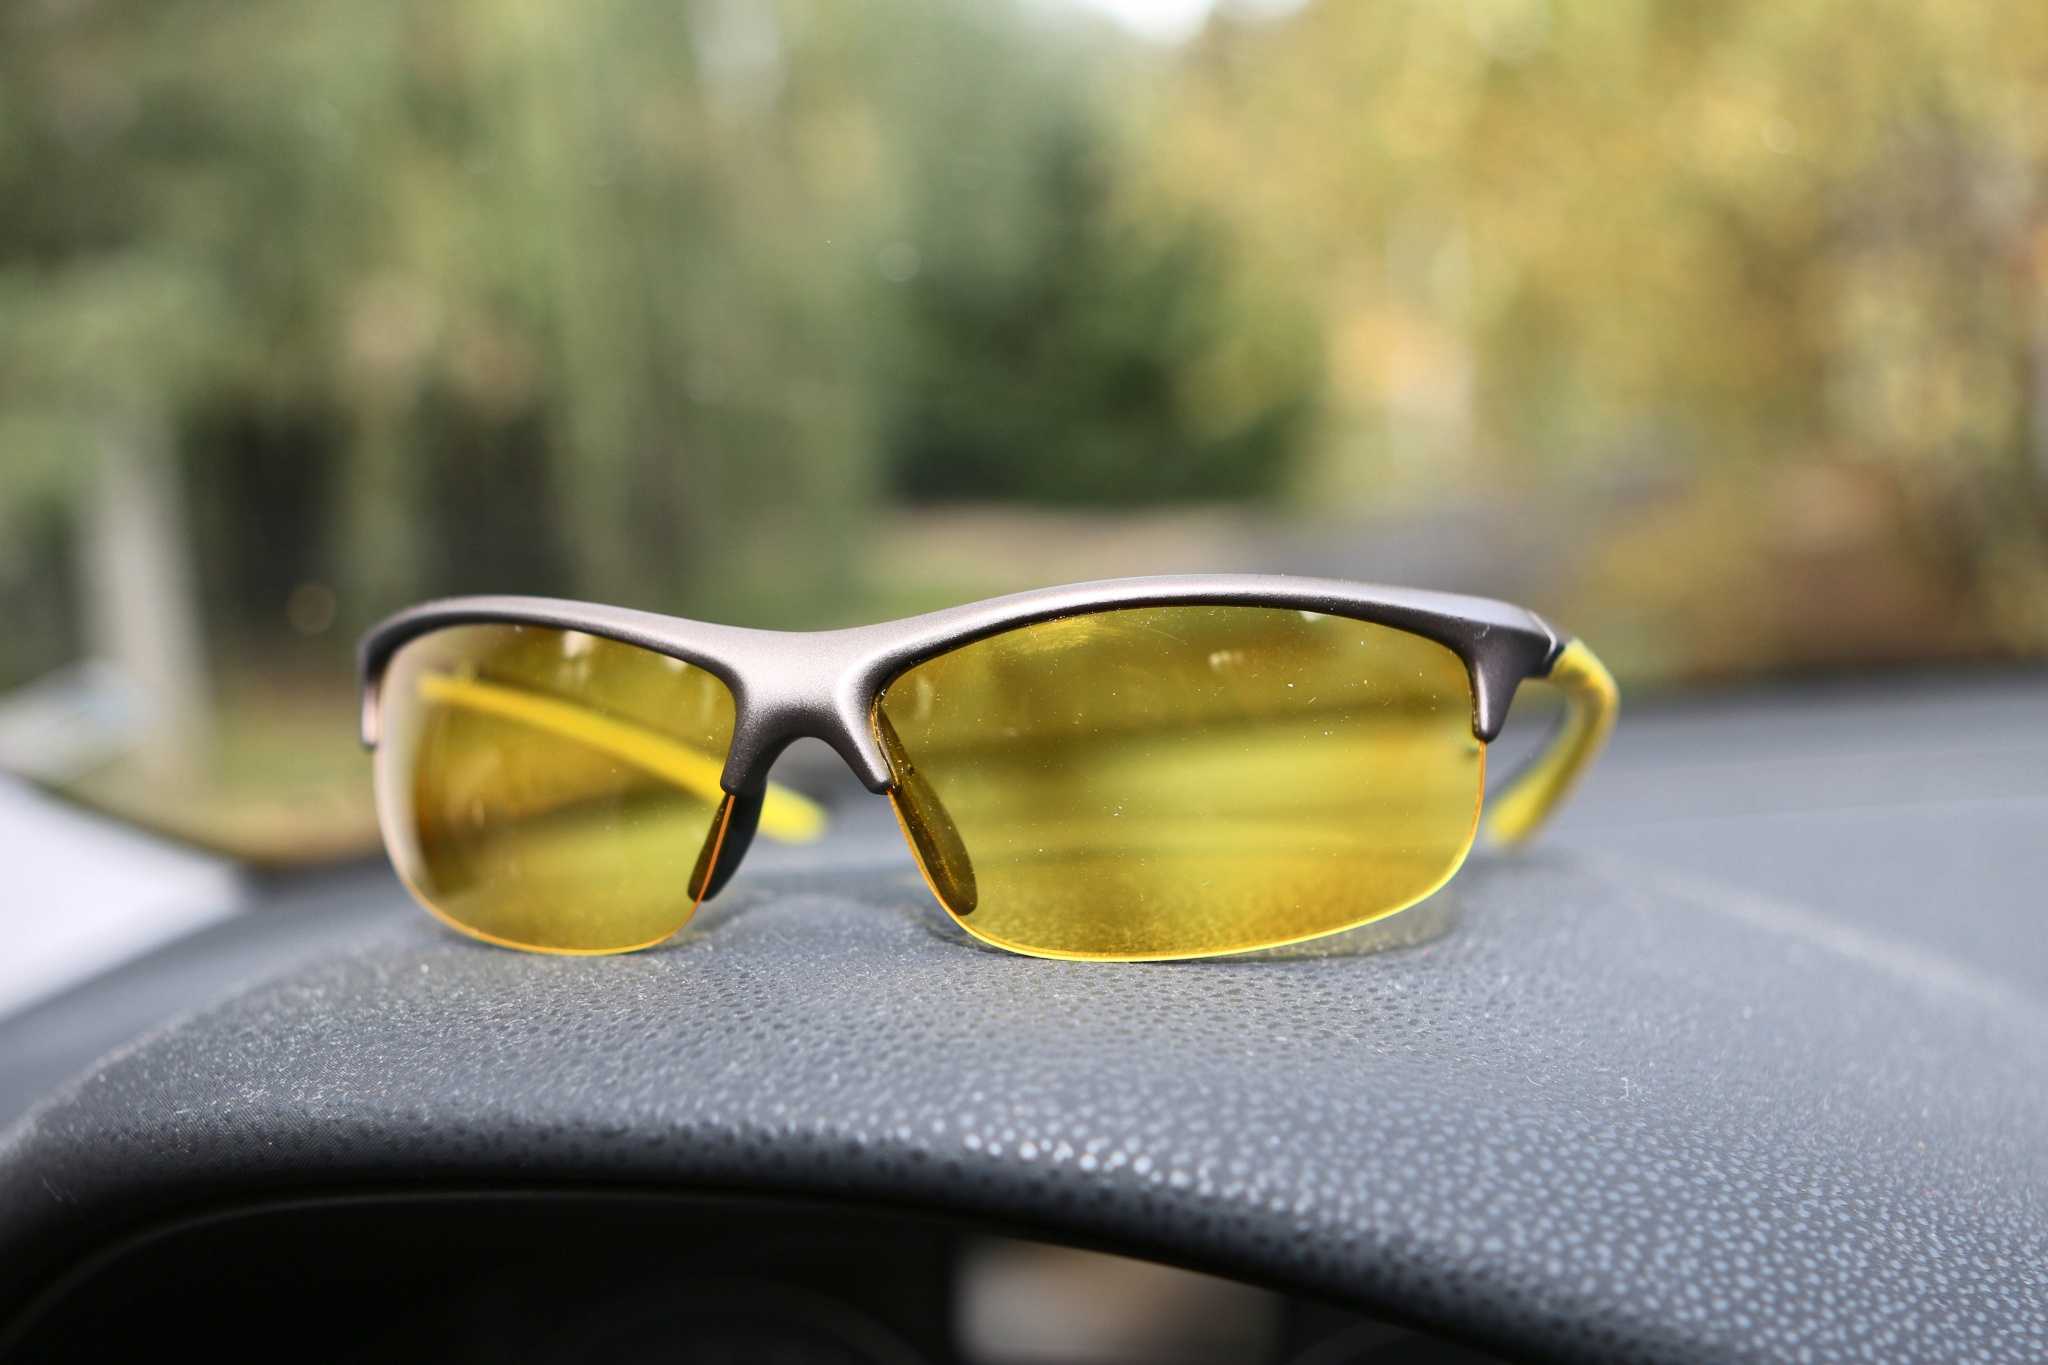 Выбираем лучшие антибликовые очки для водителей (антифары) oculistic.ru
выбираем лучшие антибликовые очки для водителей (антифары)